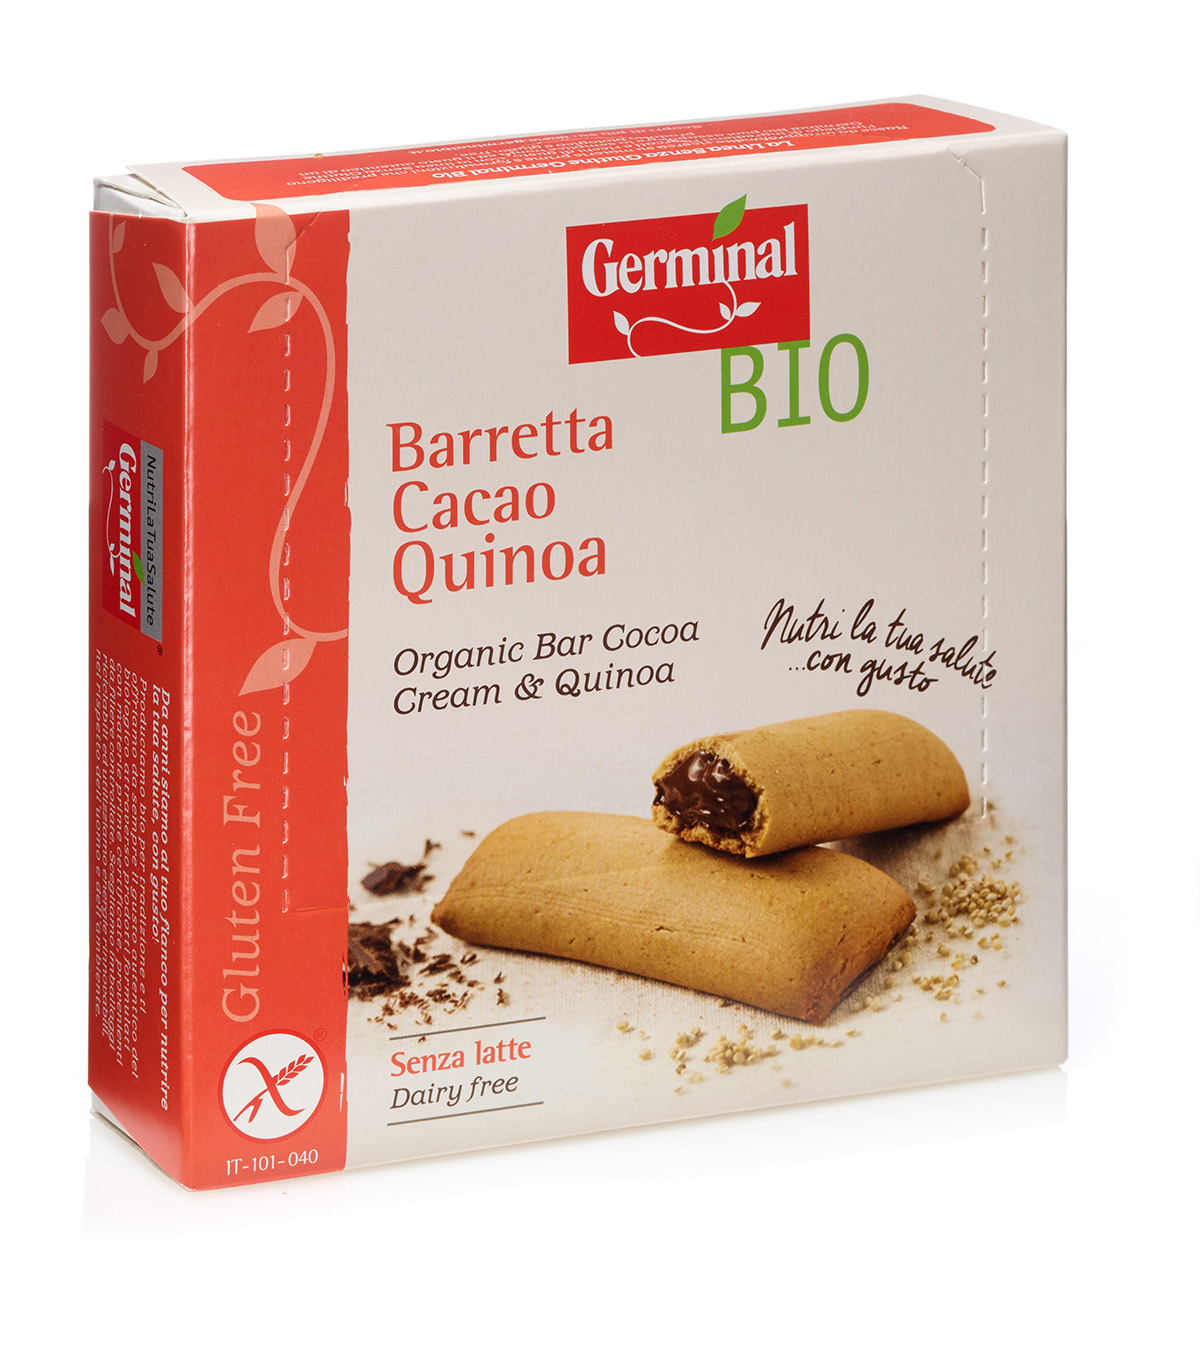 Immagine confezione Barretta Cacao Quinoa Senza Glutine Germinal Bio